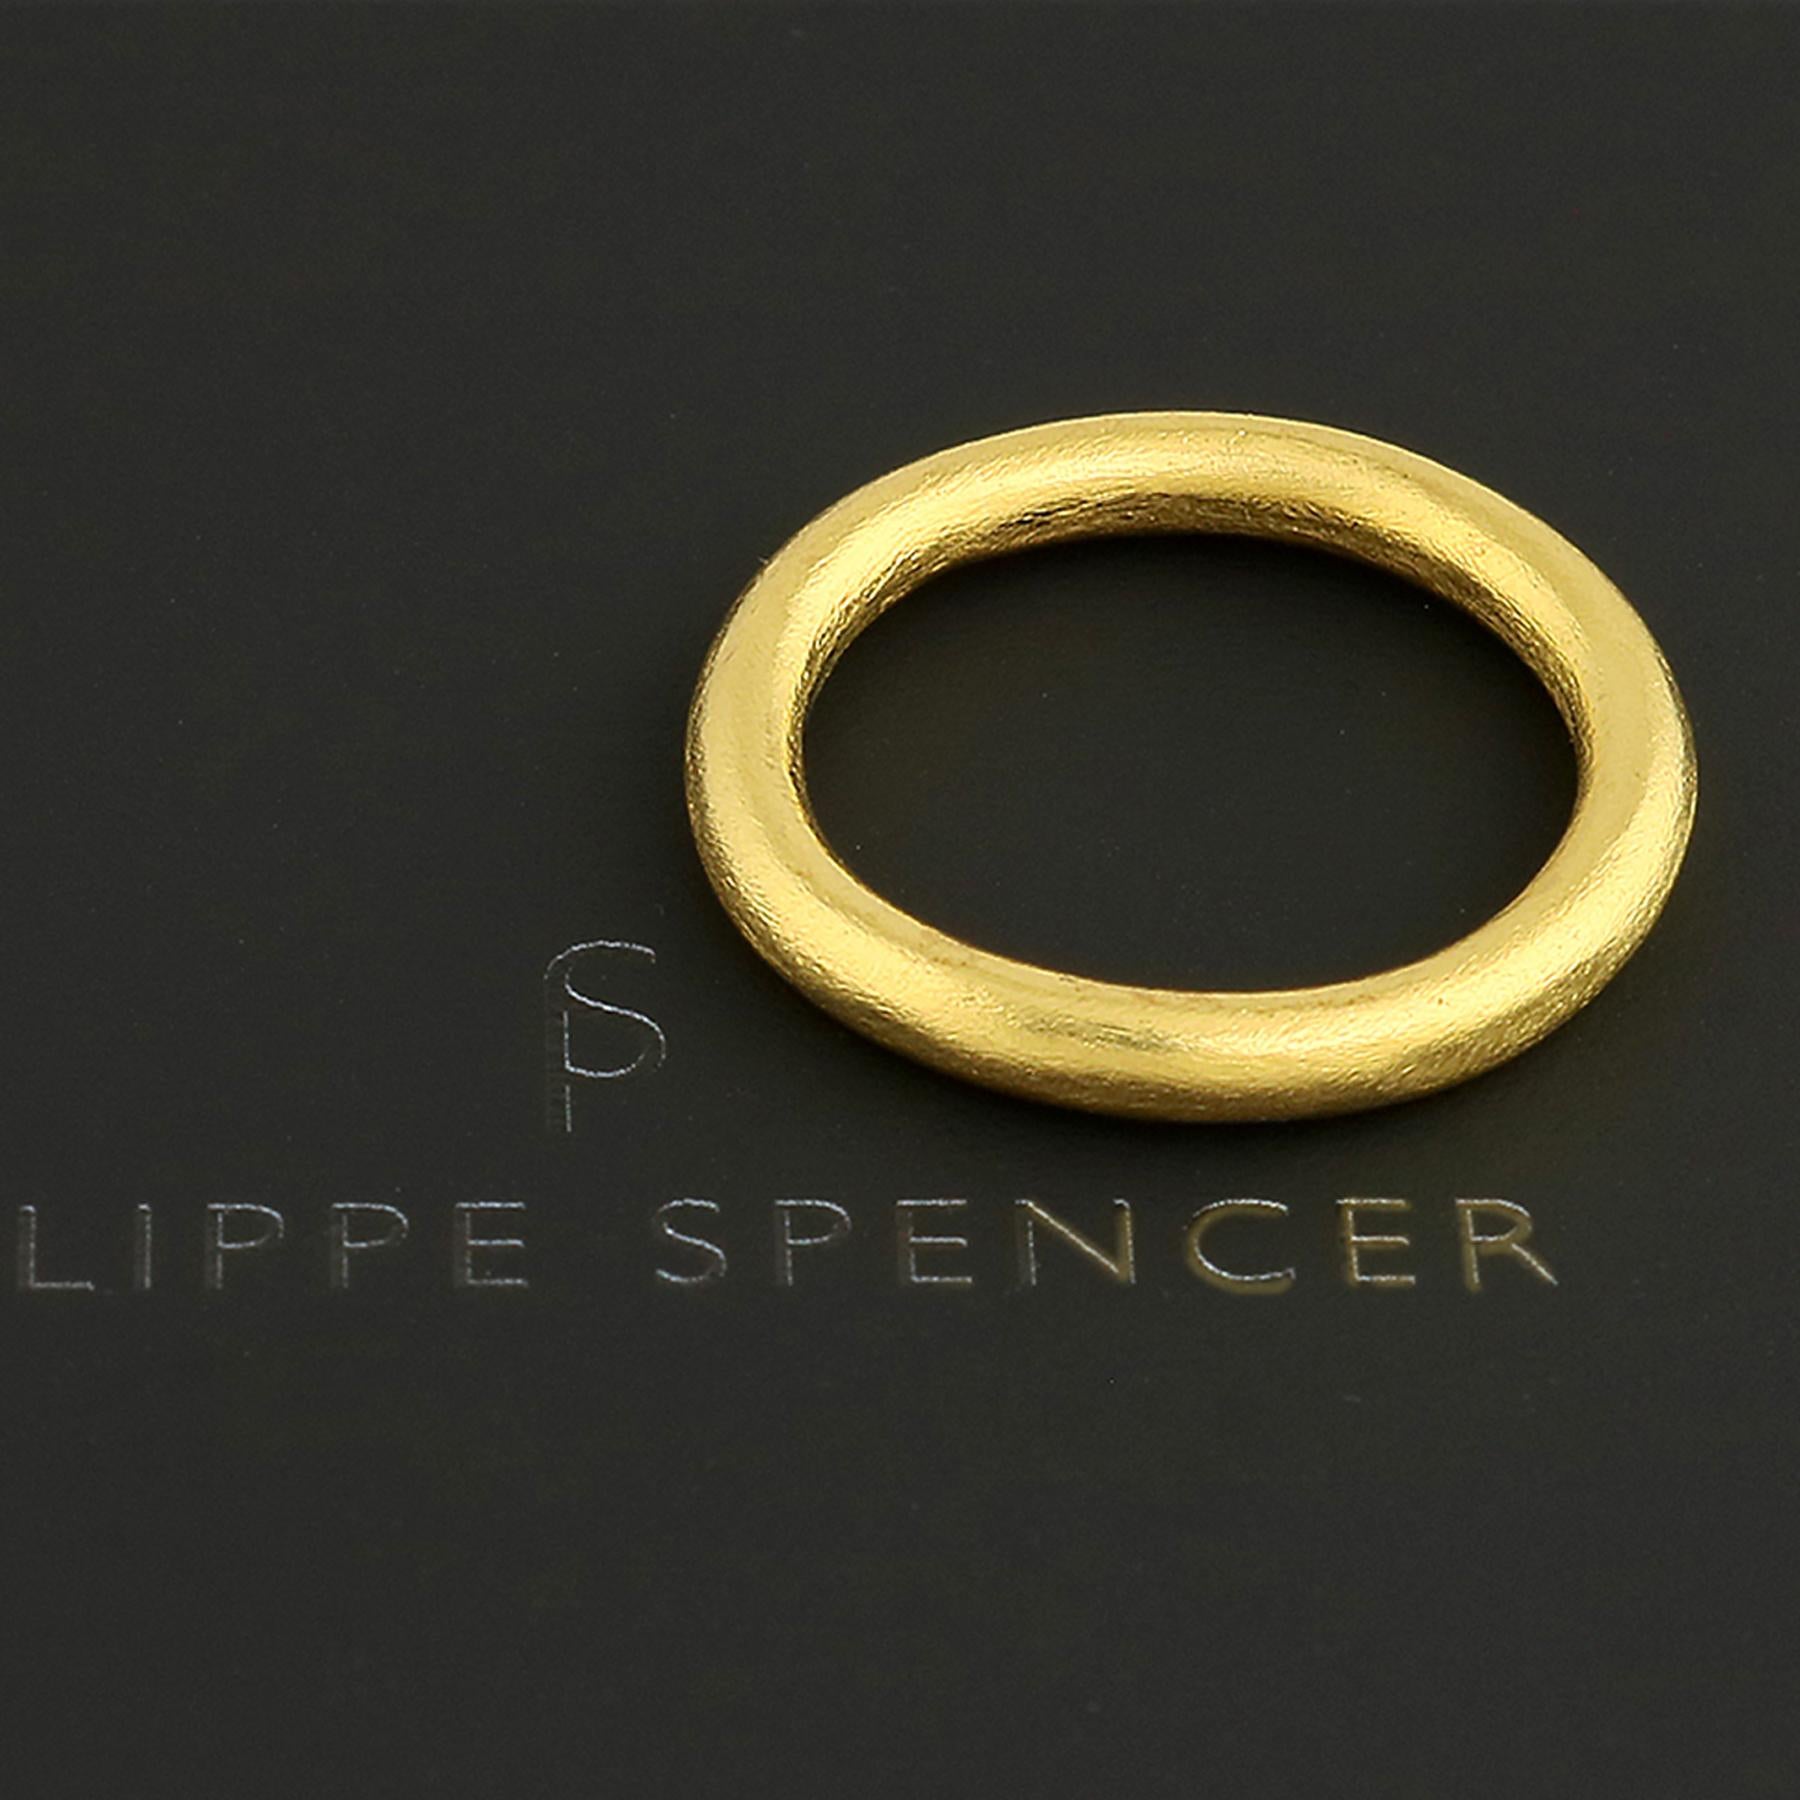 En vente :  Bague ronde organique PHILIPPE SPENCER en or massif 20 carats forgé à la main 2,8 mm 2